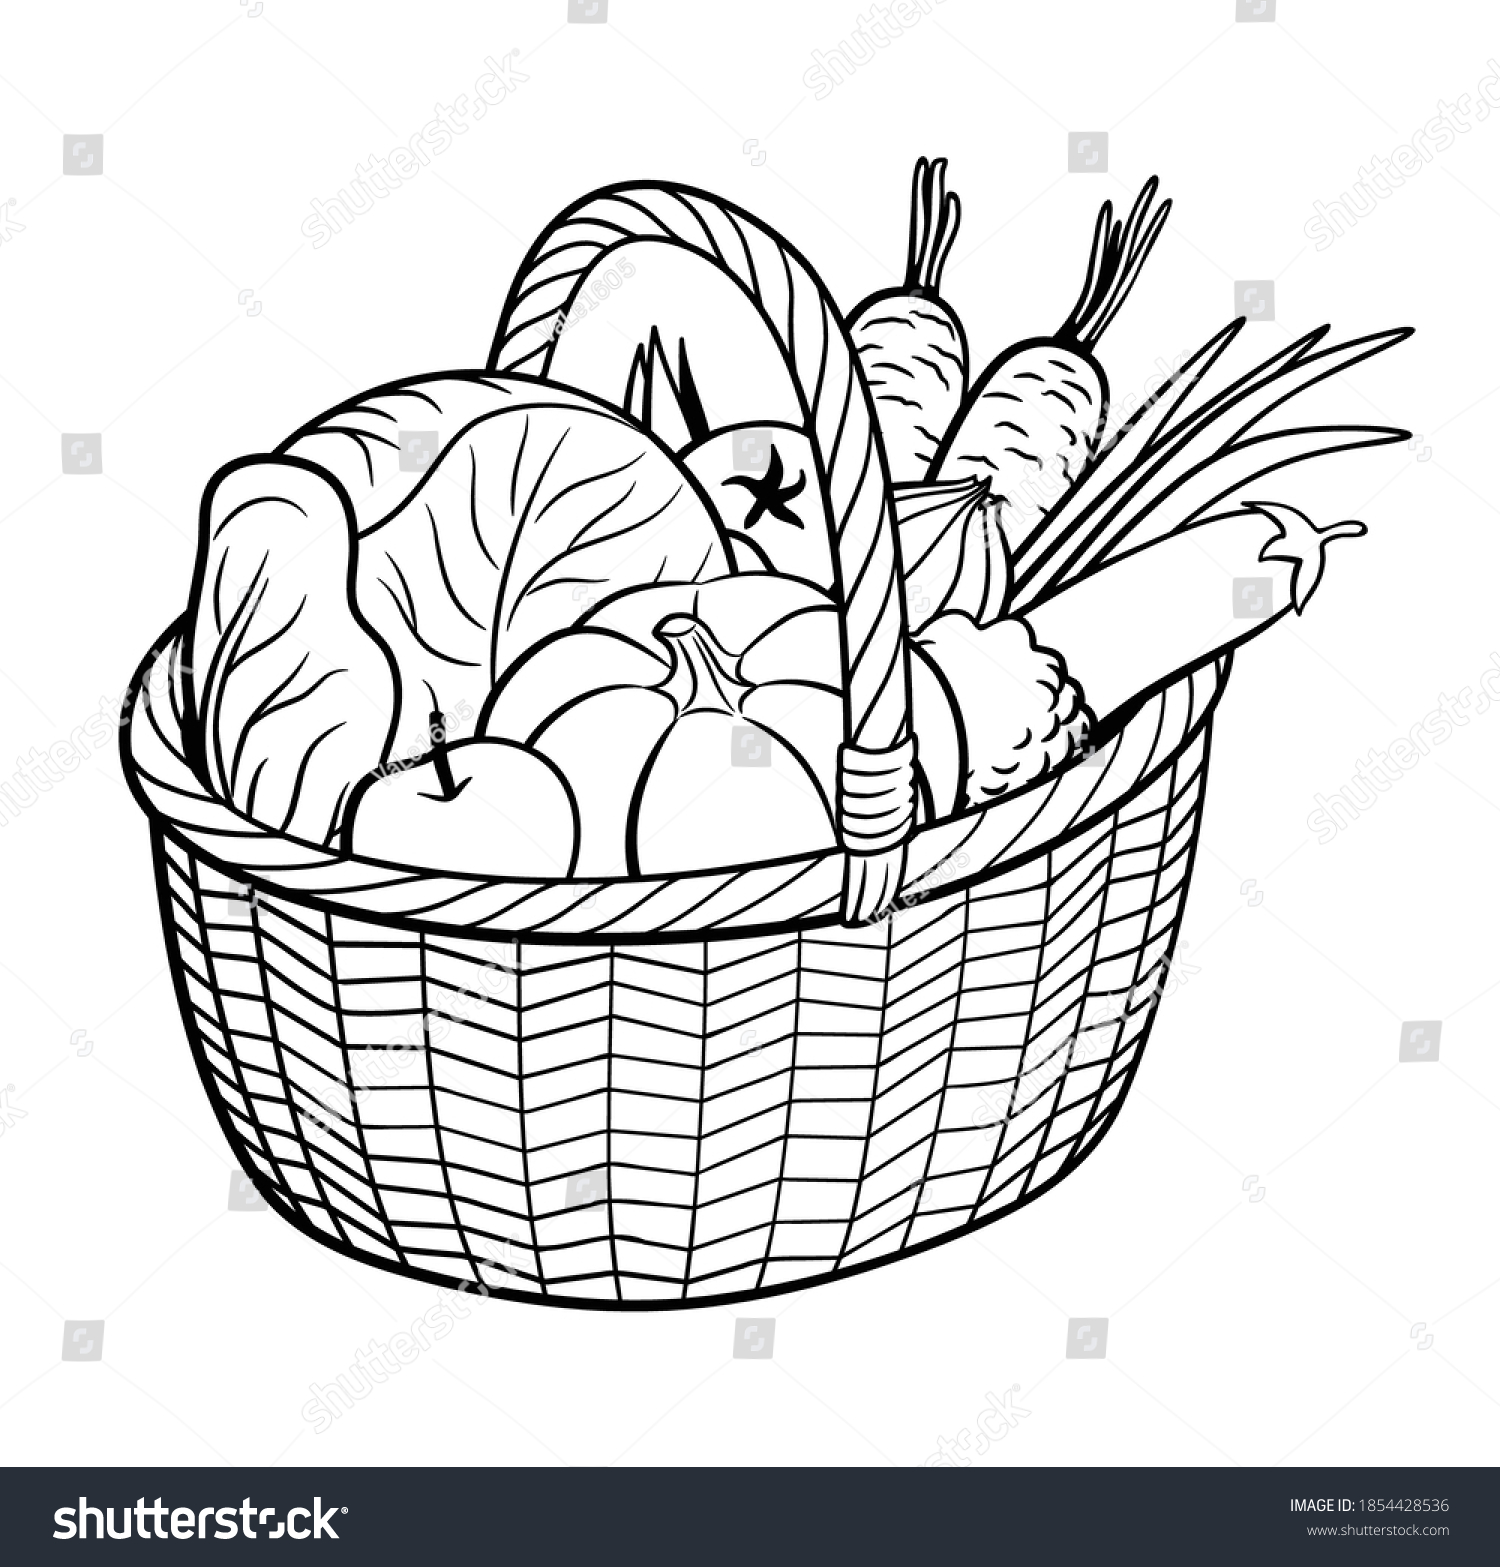 adobe illustrator food basket outline vector download